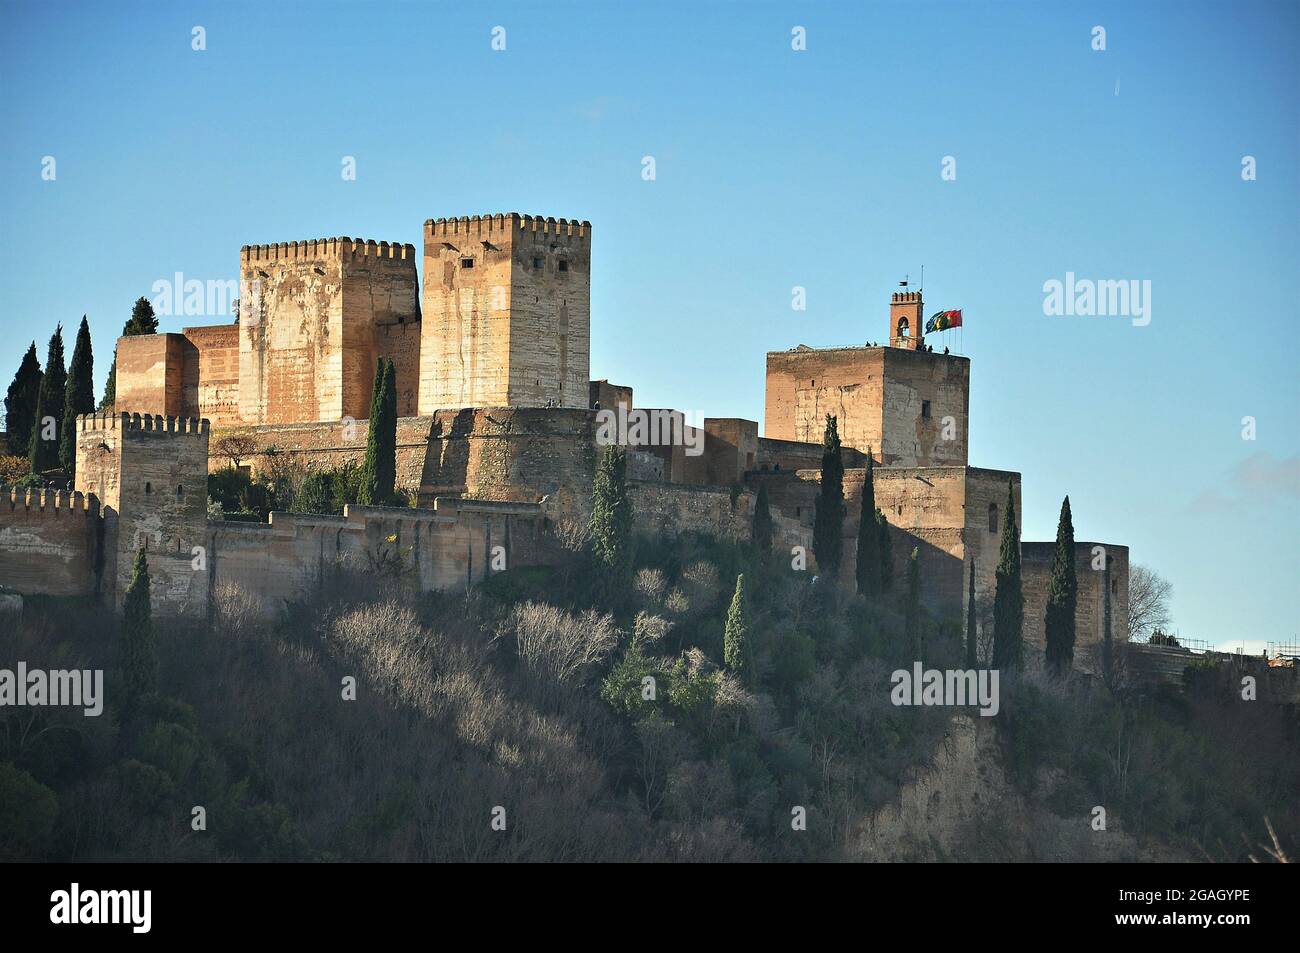 Alcazaba of the Alhambra in Granada-Spain Stock Photo